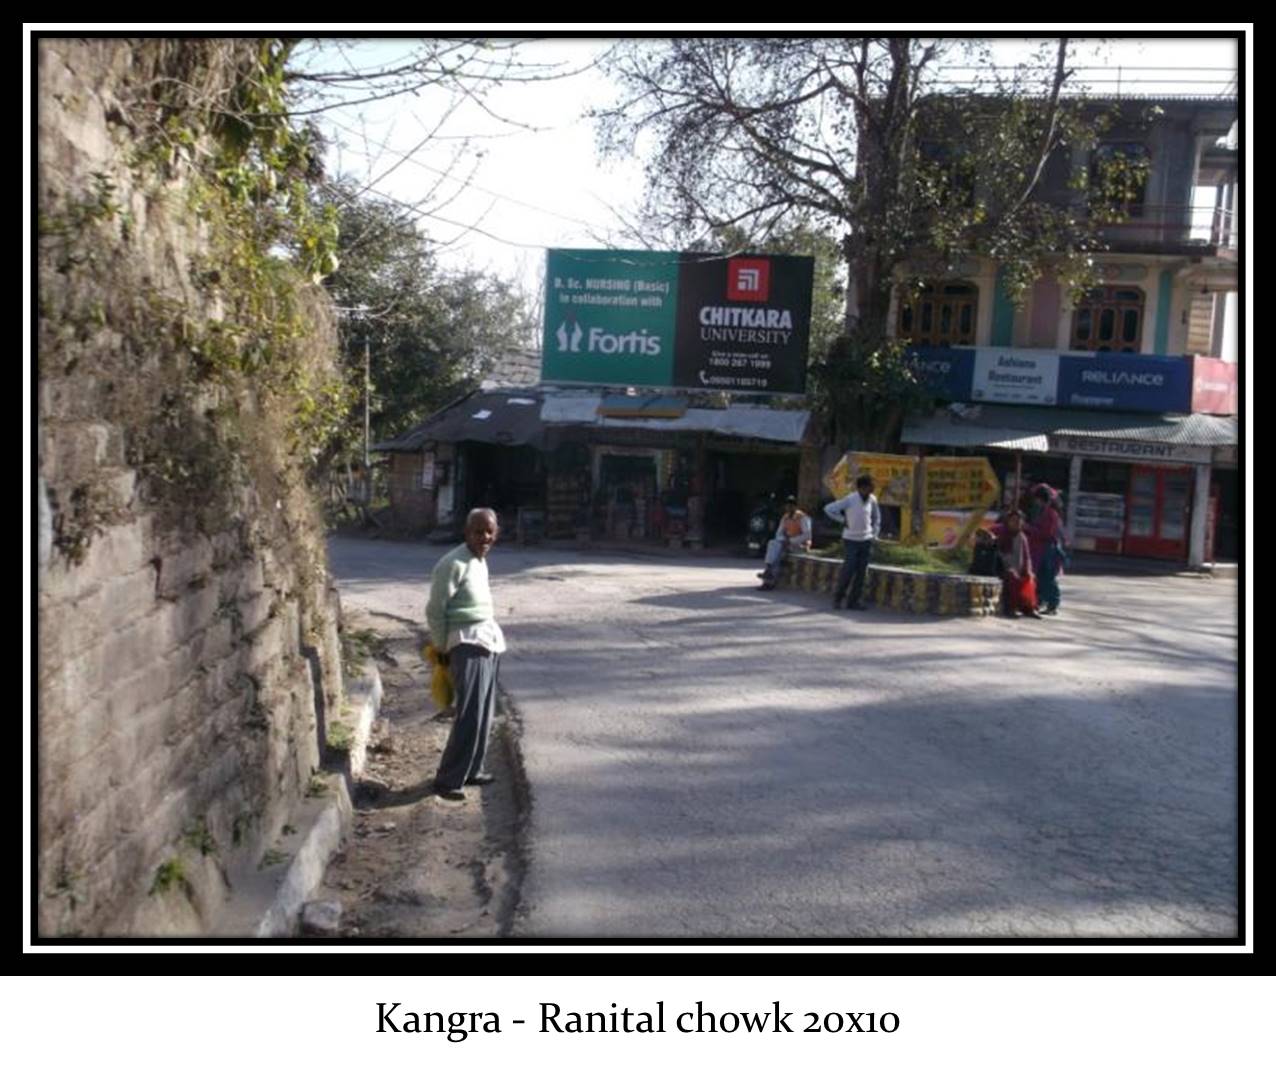 Ranital bus stand, Kangra